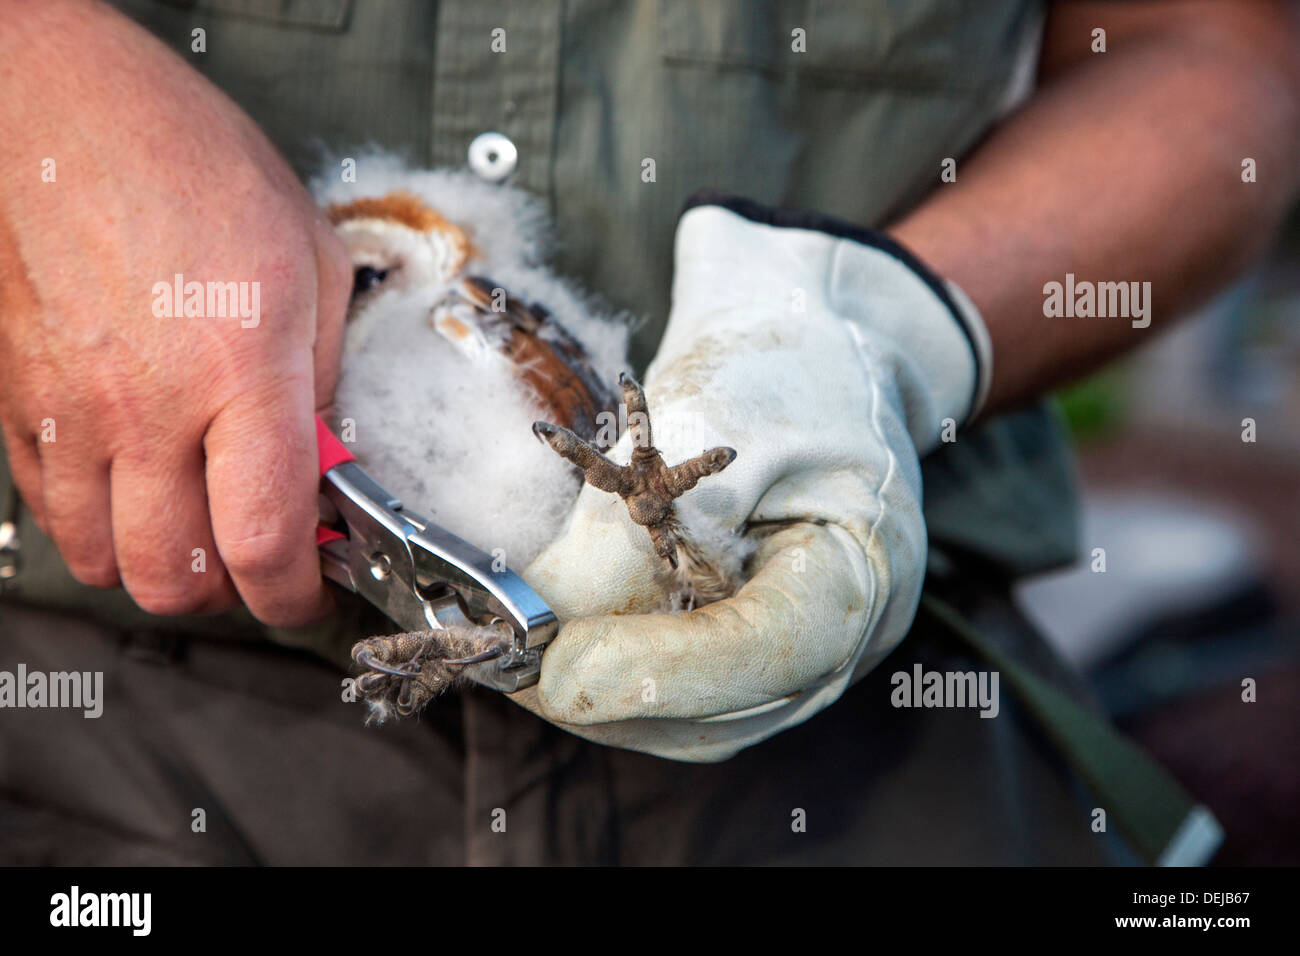 Suoneria di uccello con un paio di pinze e guanto squillando Barbagianni (Tyto alba) owlet / pulcino con anello di metallo sulla gamba di identificazione Foto Stock